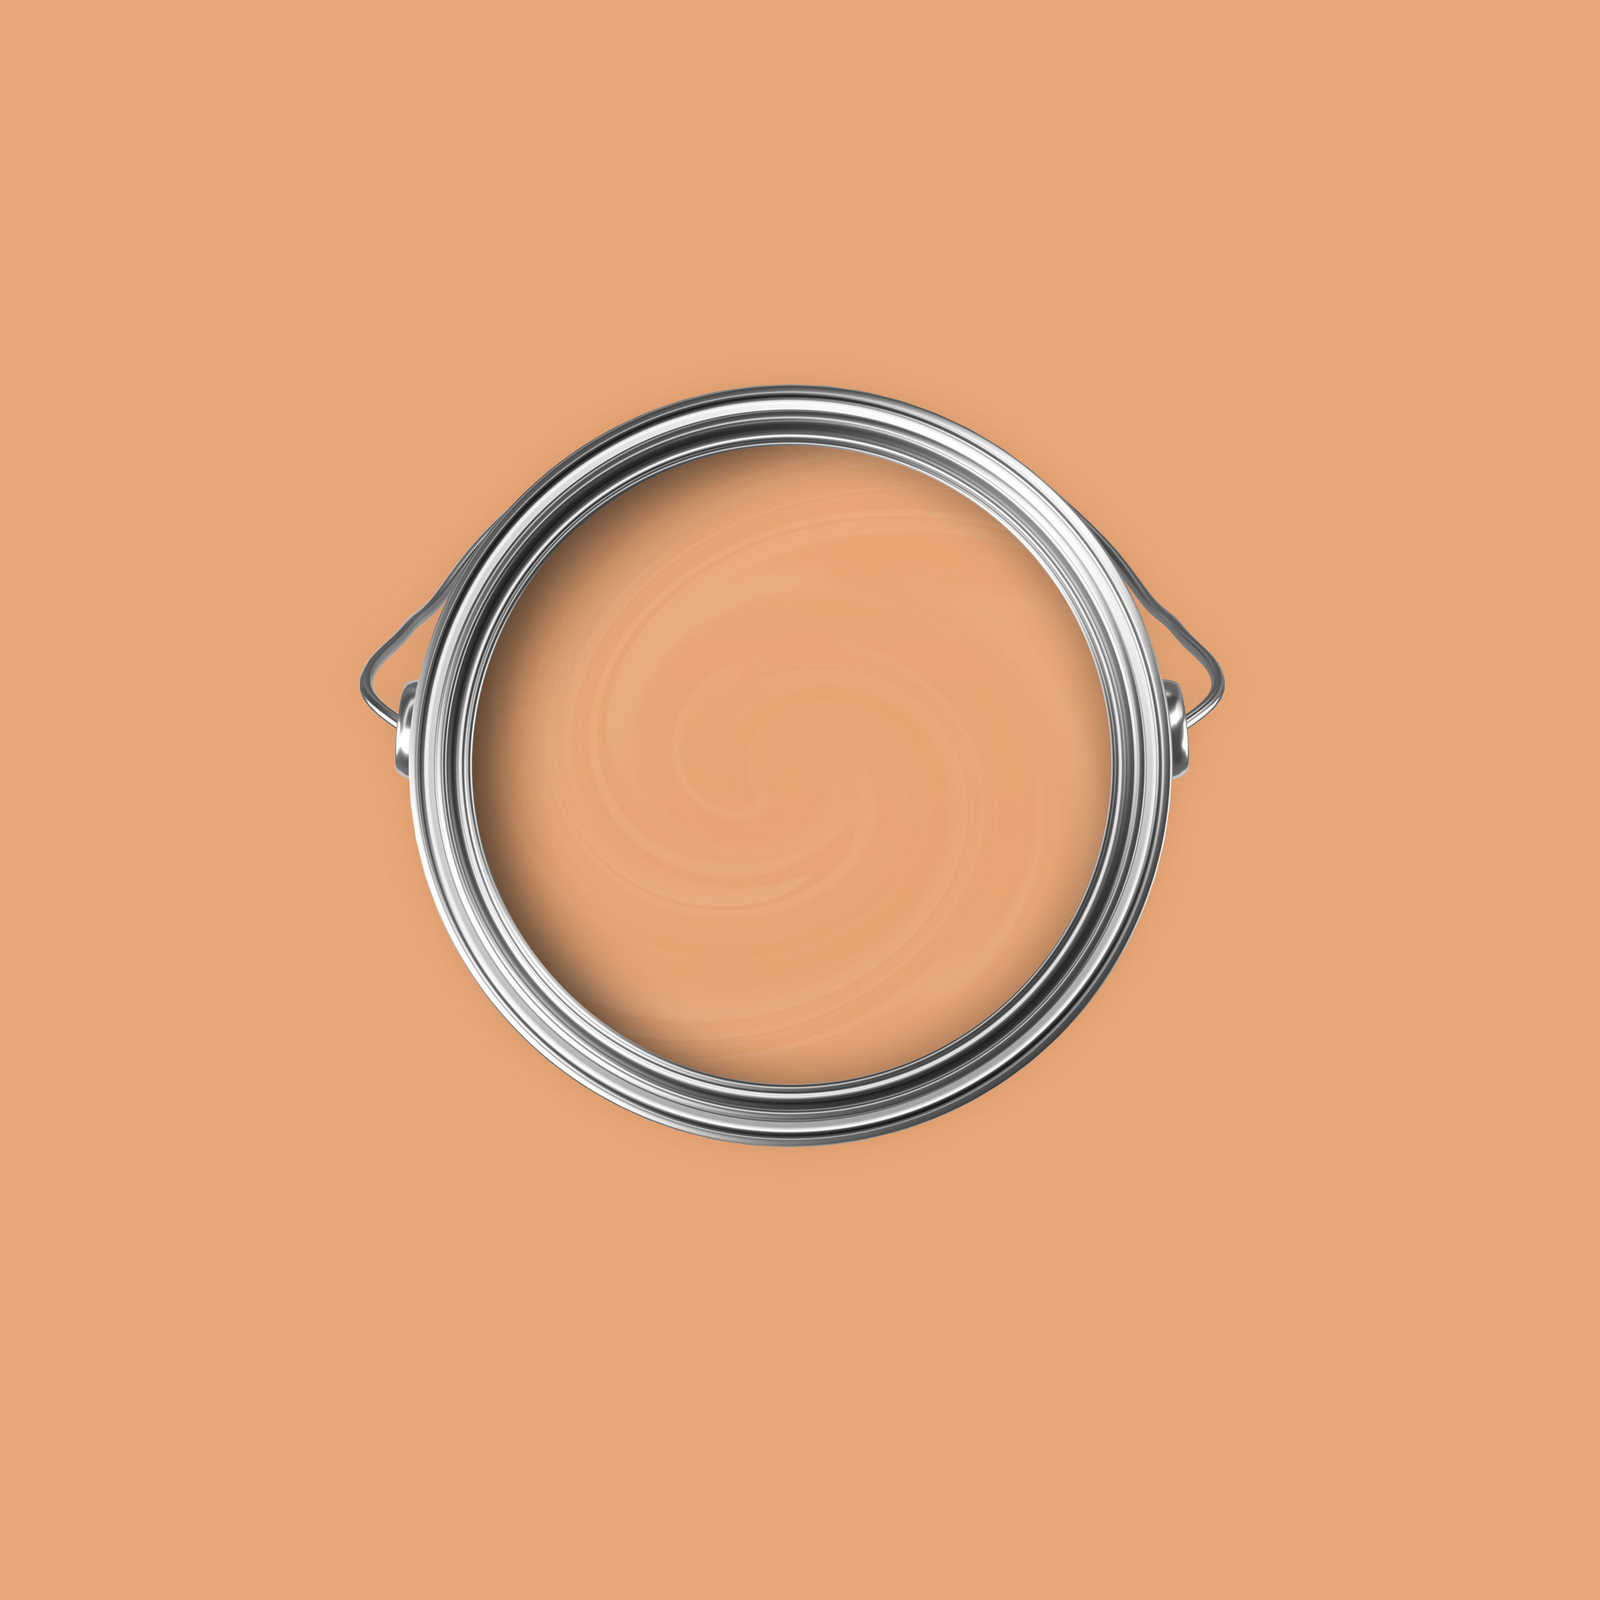             Premium Wandfarbe aufweckendes Apricot »Pretty Peach« NW901 – 2,5 Liter
        